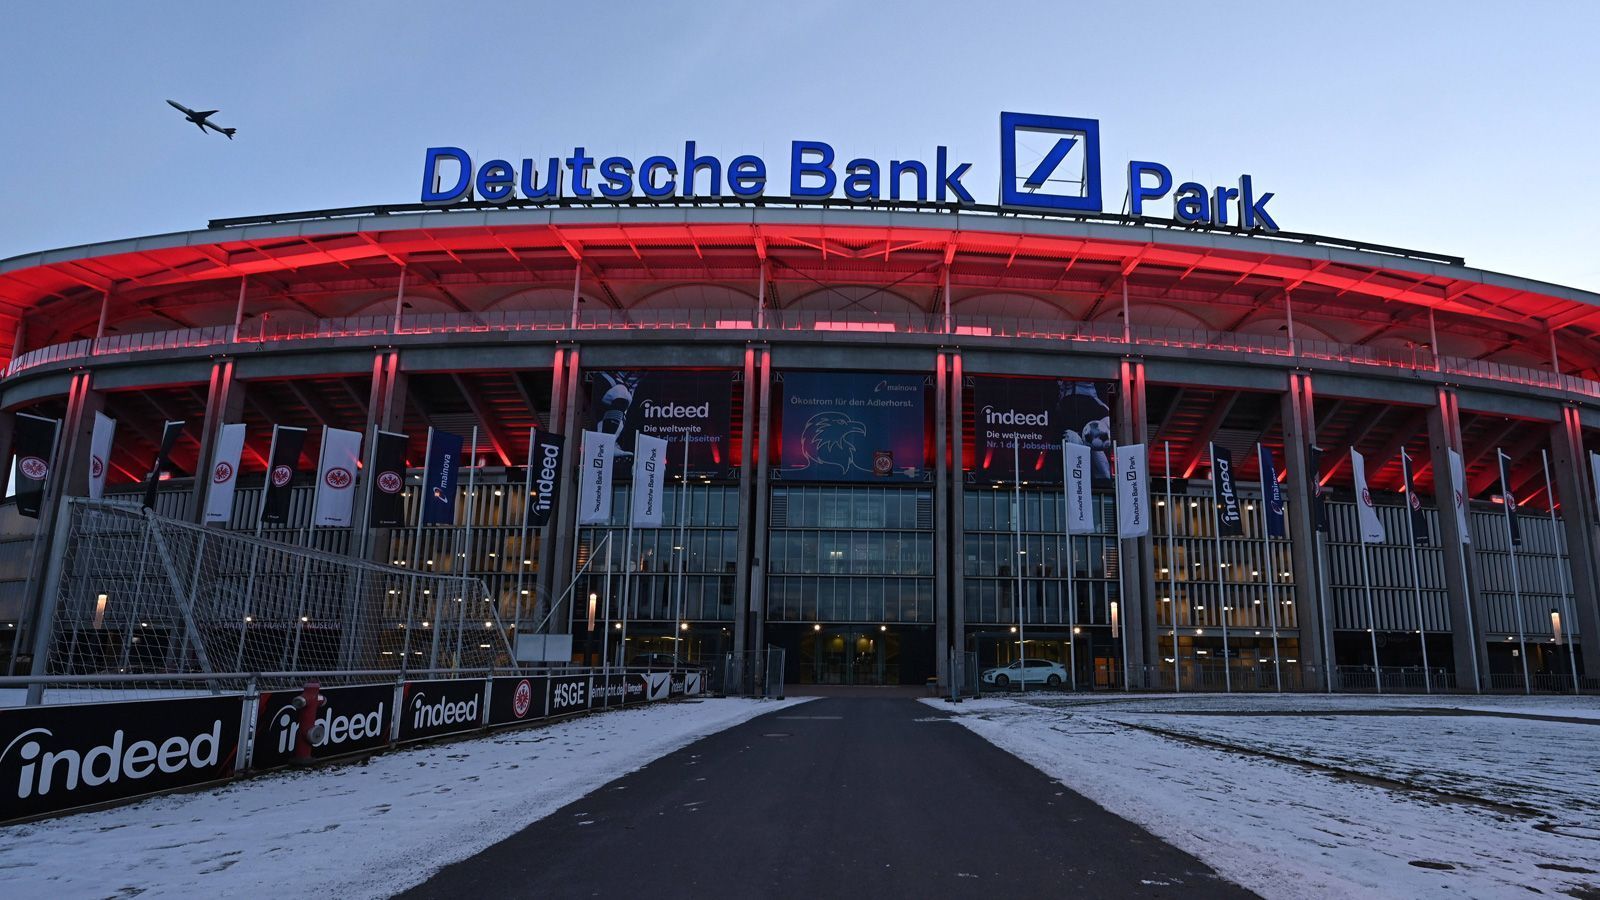 <strong>Deutsche Bank Park in Frankfurt</strong><br>Die NFL-Spiele in Deutschland 2023 finden in Frankfurt statt. Am 5. November treffen die Dolphins auf die Chiefs, eine Woche später die Colts auf die Patriots. Nicht ausgeschlossen, dass der Deutsche Bank Park 2024 erneut Austragungsort wird. Schließlich ist die Arena im "Herzen von Europa" gelegen und überall aus Deutschland und dem benachbarten Ausland gut zu erreichen.
